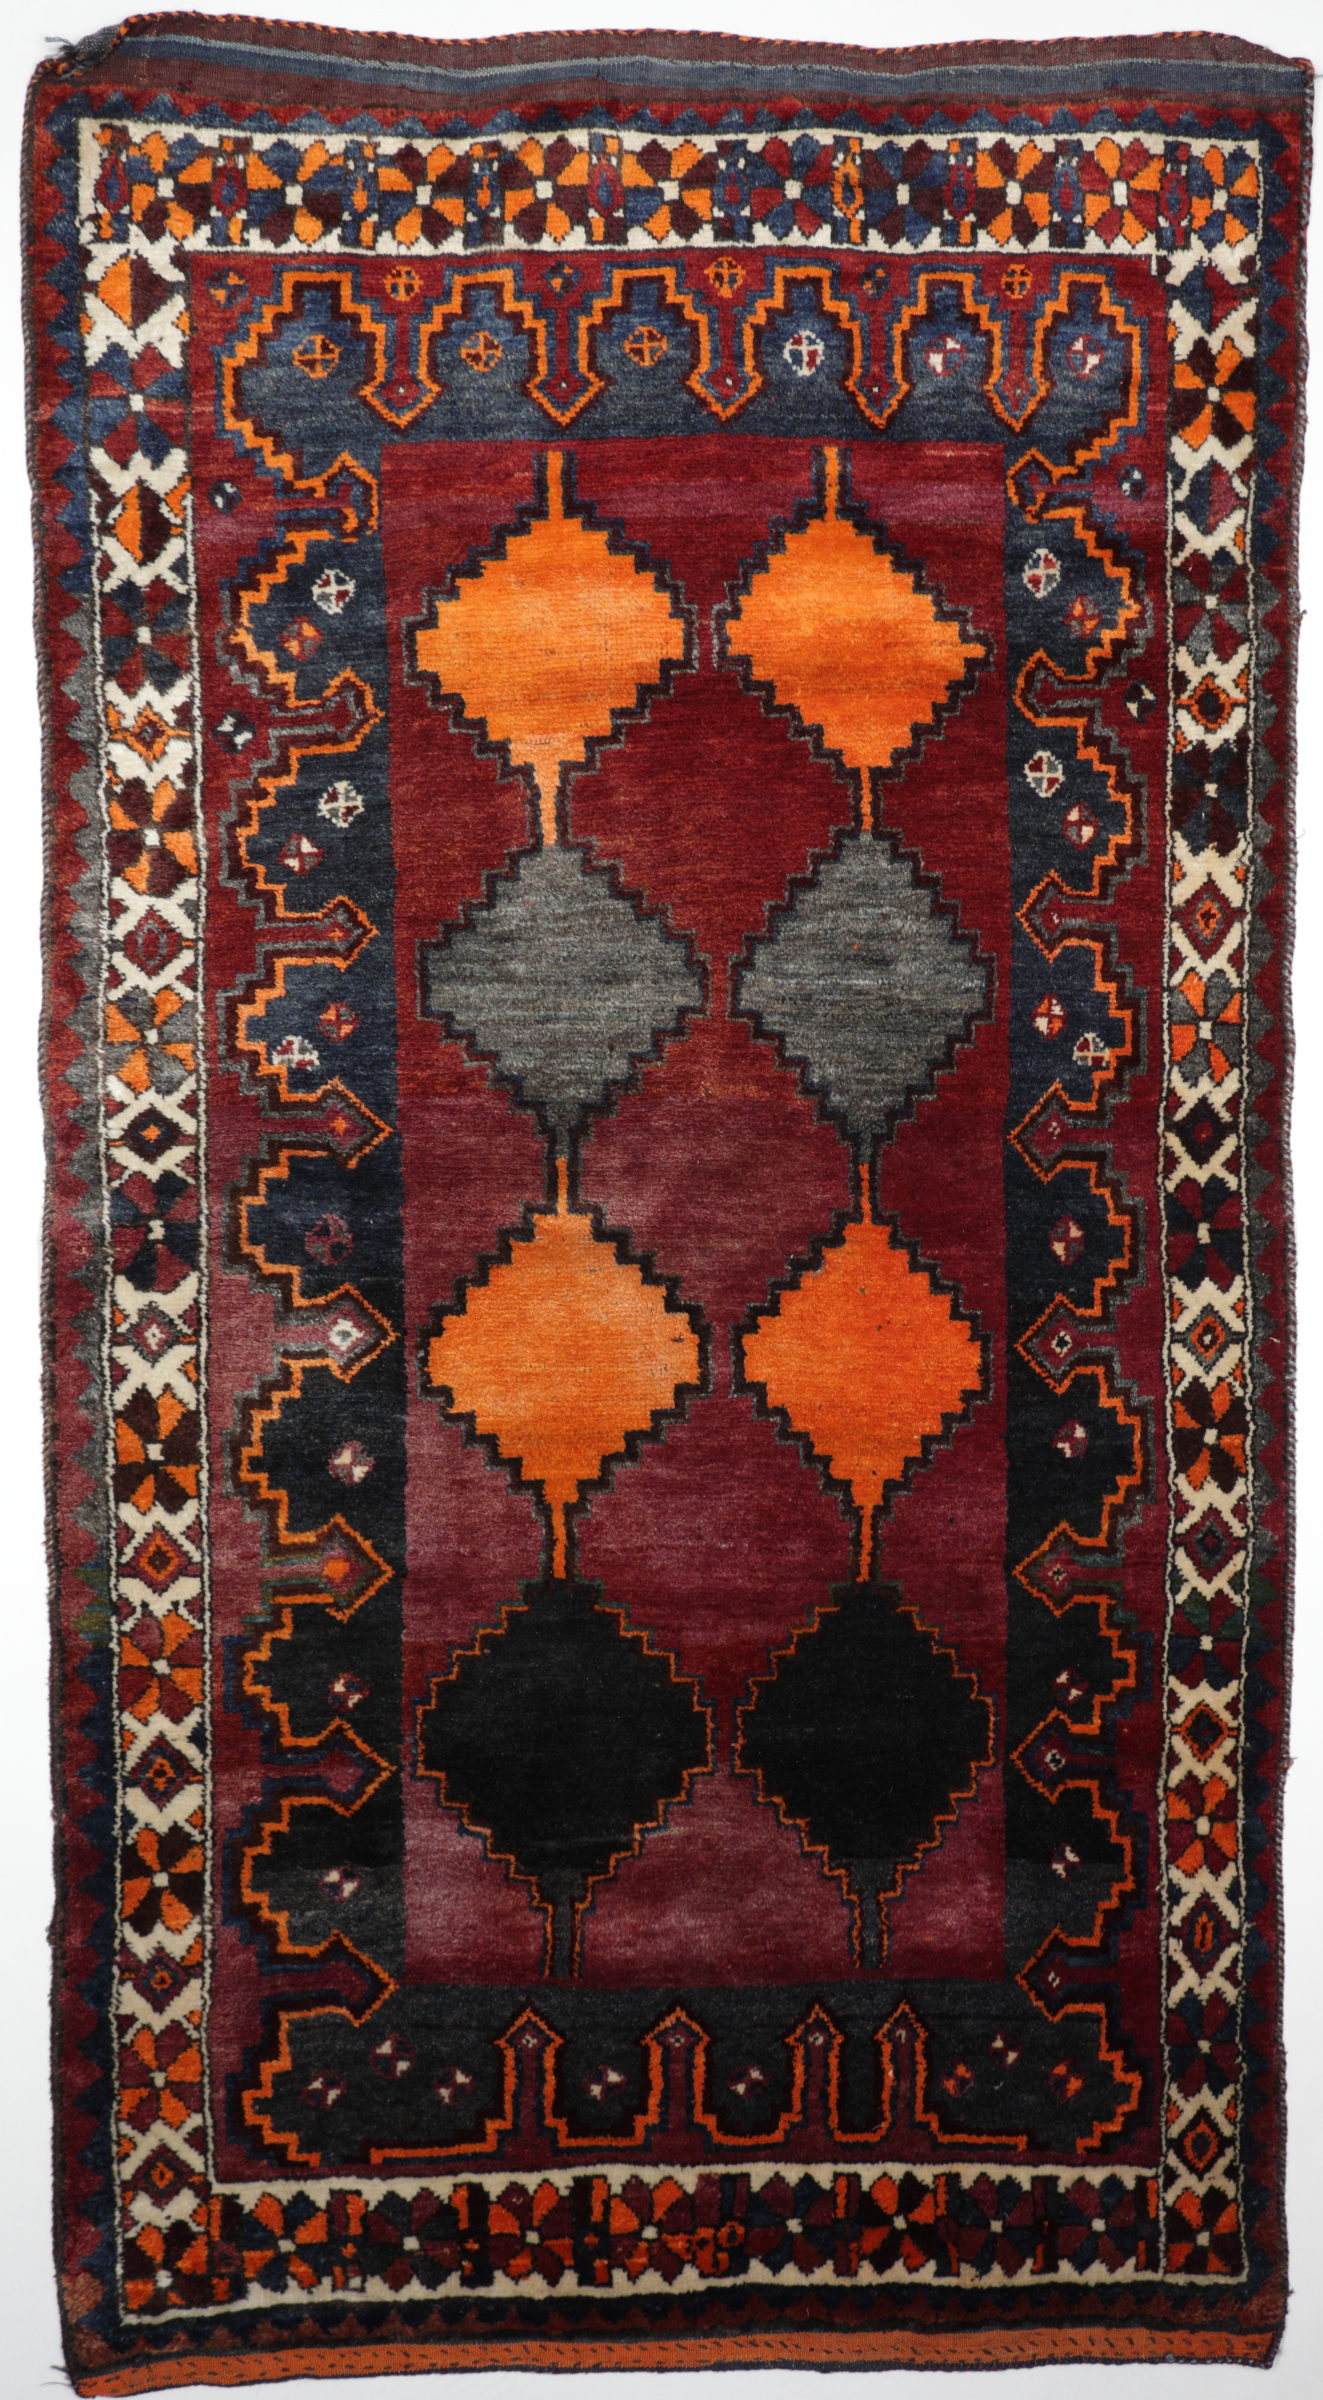 Persischer Nomadenteppich Lory, handgeknüpft aus reiner Schurwolle, rot/orange/mehrfarbig, Draufsicht